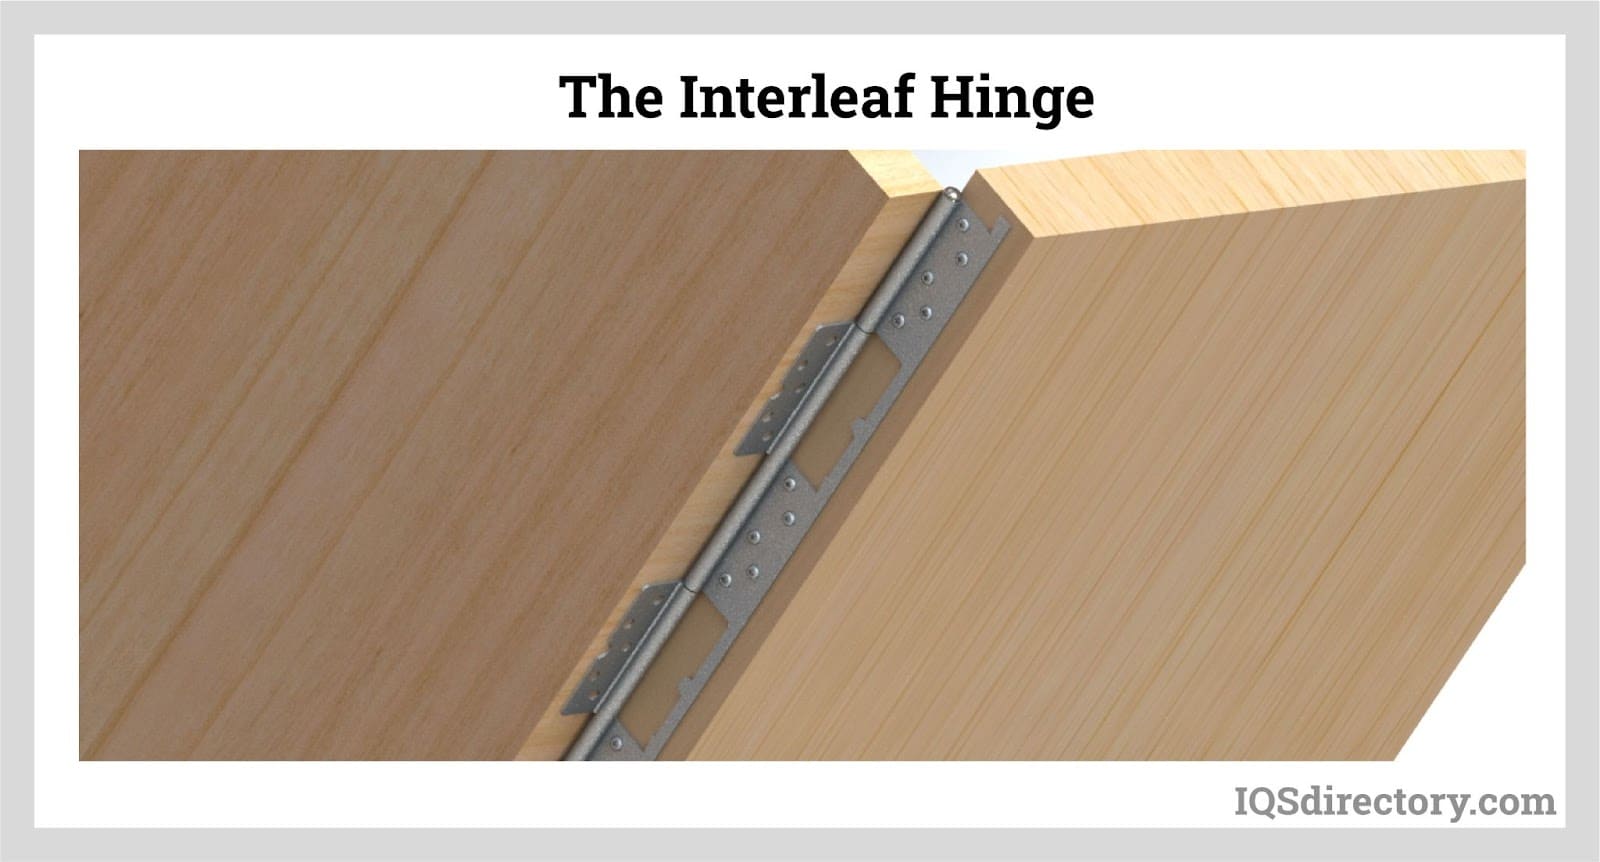 The Interleaf Hinge